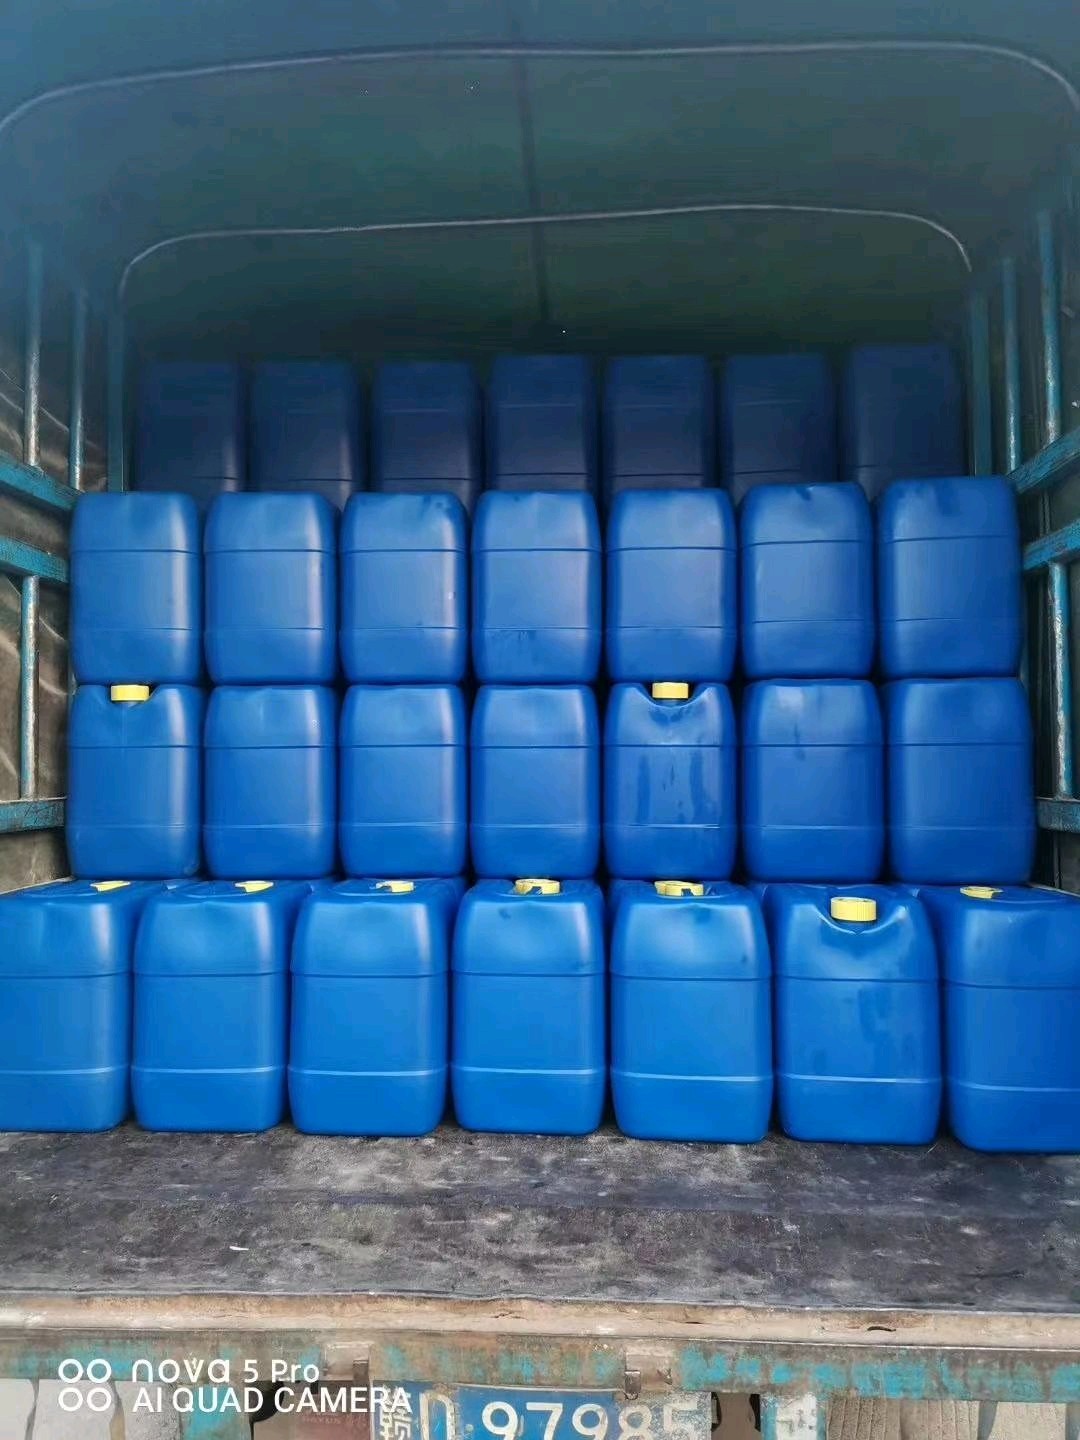 Factory Supply Oriental arborvitae oil 100% Pure Natural Therapeutic Grade for Aromatherapy Non-GMO in Big Drum